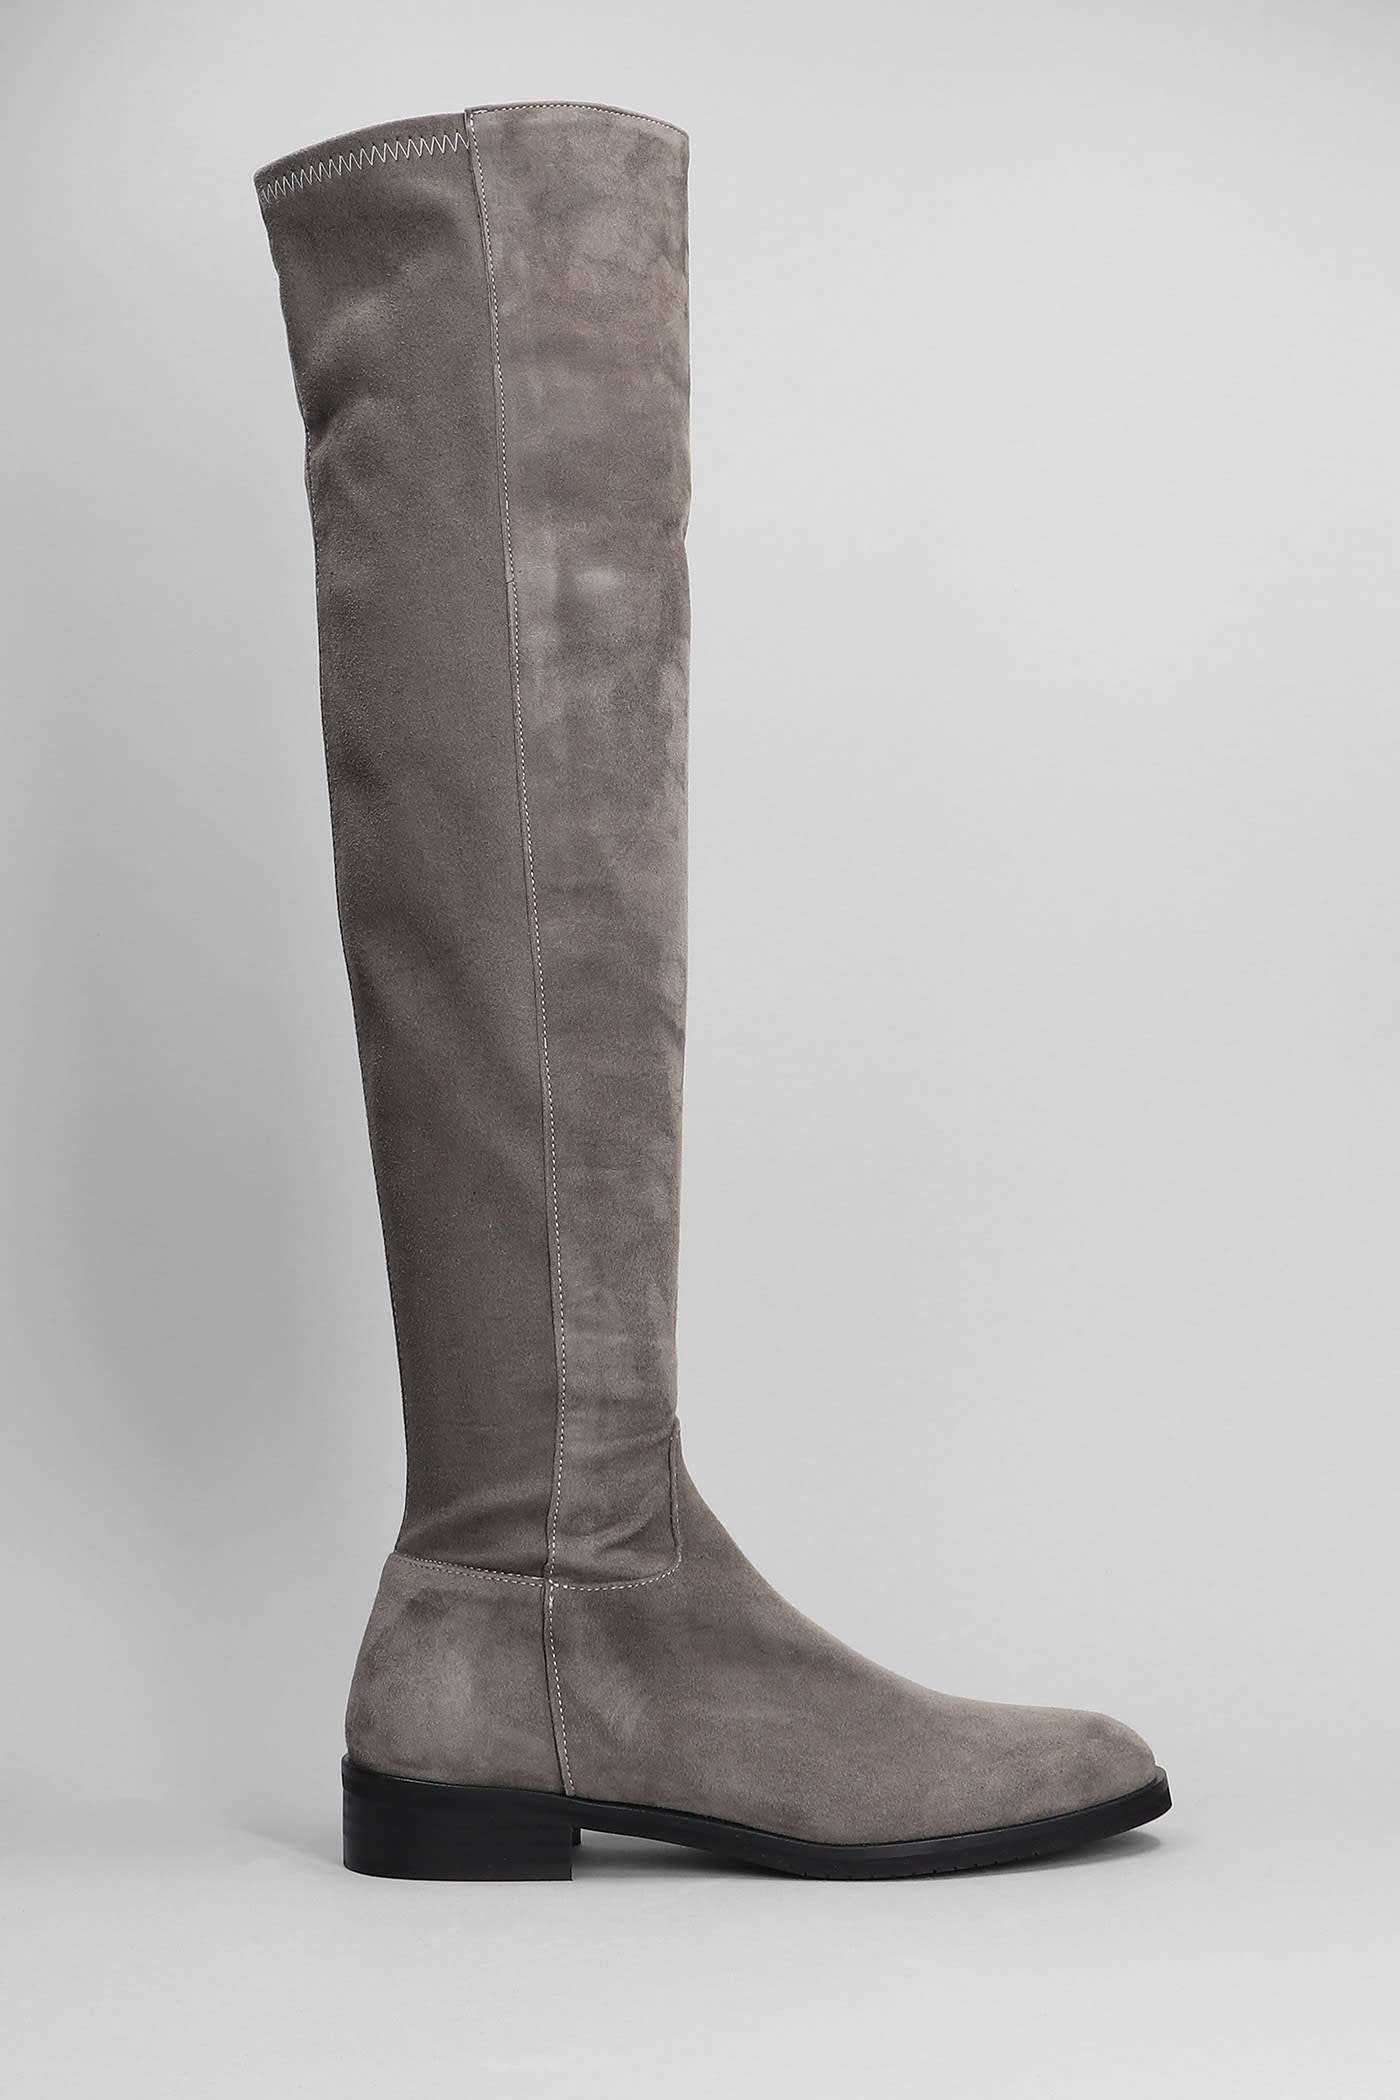 Julie Dee Low Heels Boots In Grey Suede